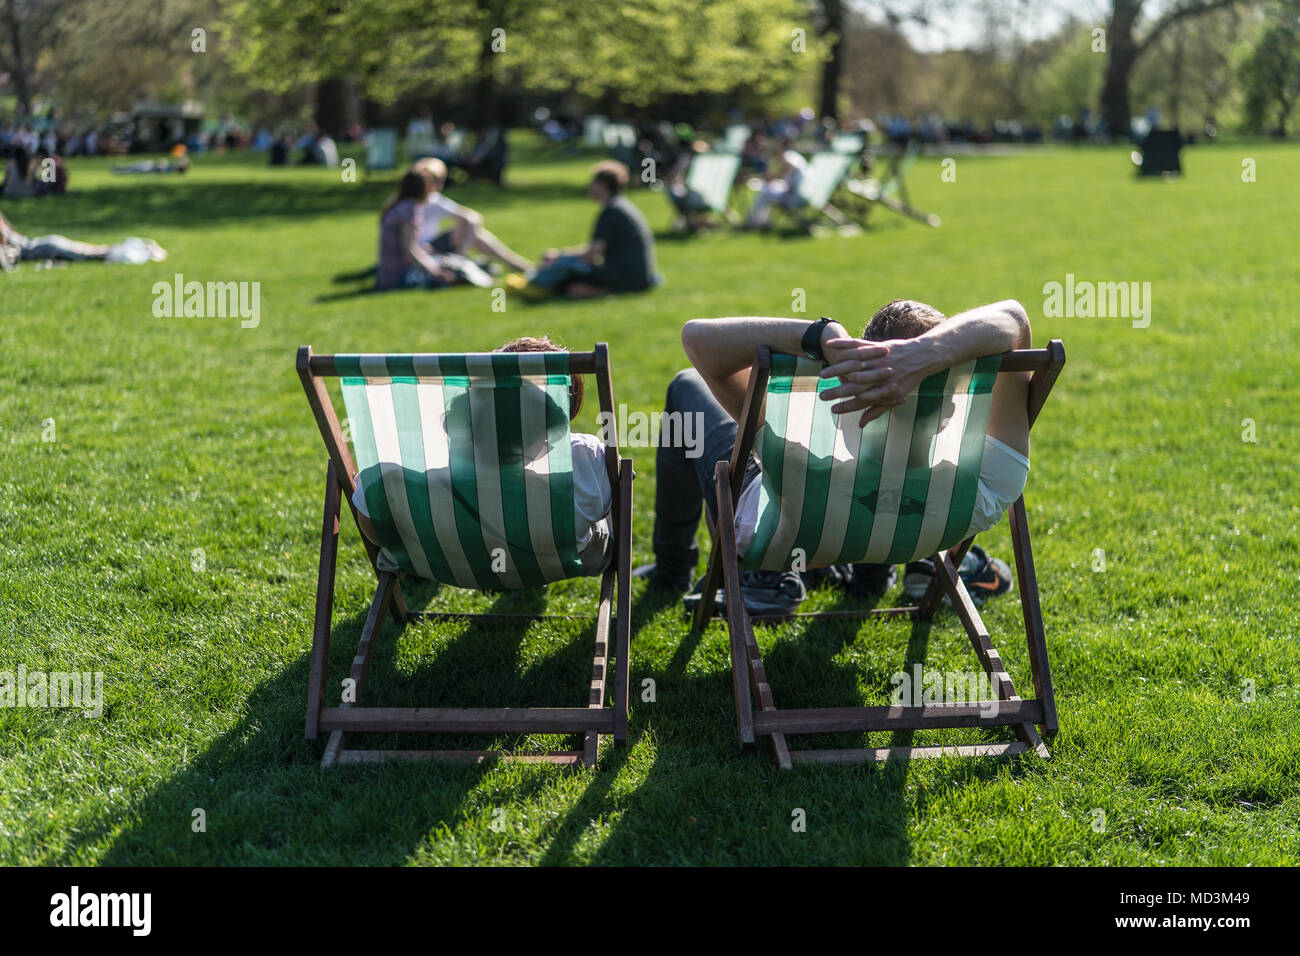 Londra, Regno Unito. Il 18 aprile 2018. Le persone che si godono la calda primavera meteo su sedie a sdraio in St James Park su un giorno quando la temperatura ha raggiunto 25 gradi a Londra. Foto data: mercoledì 18 aprile, 2018. Foto: Roger Garfield/Alamy Live News Foto Stock